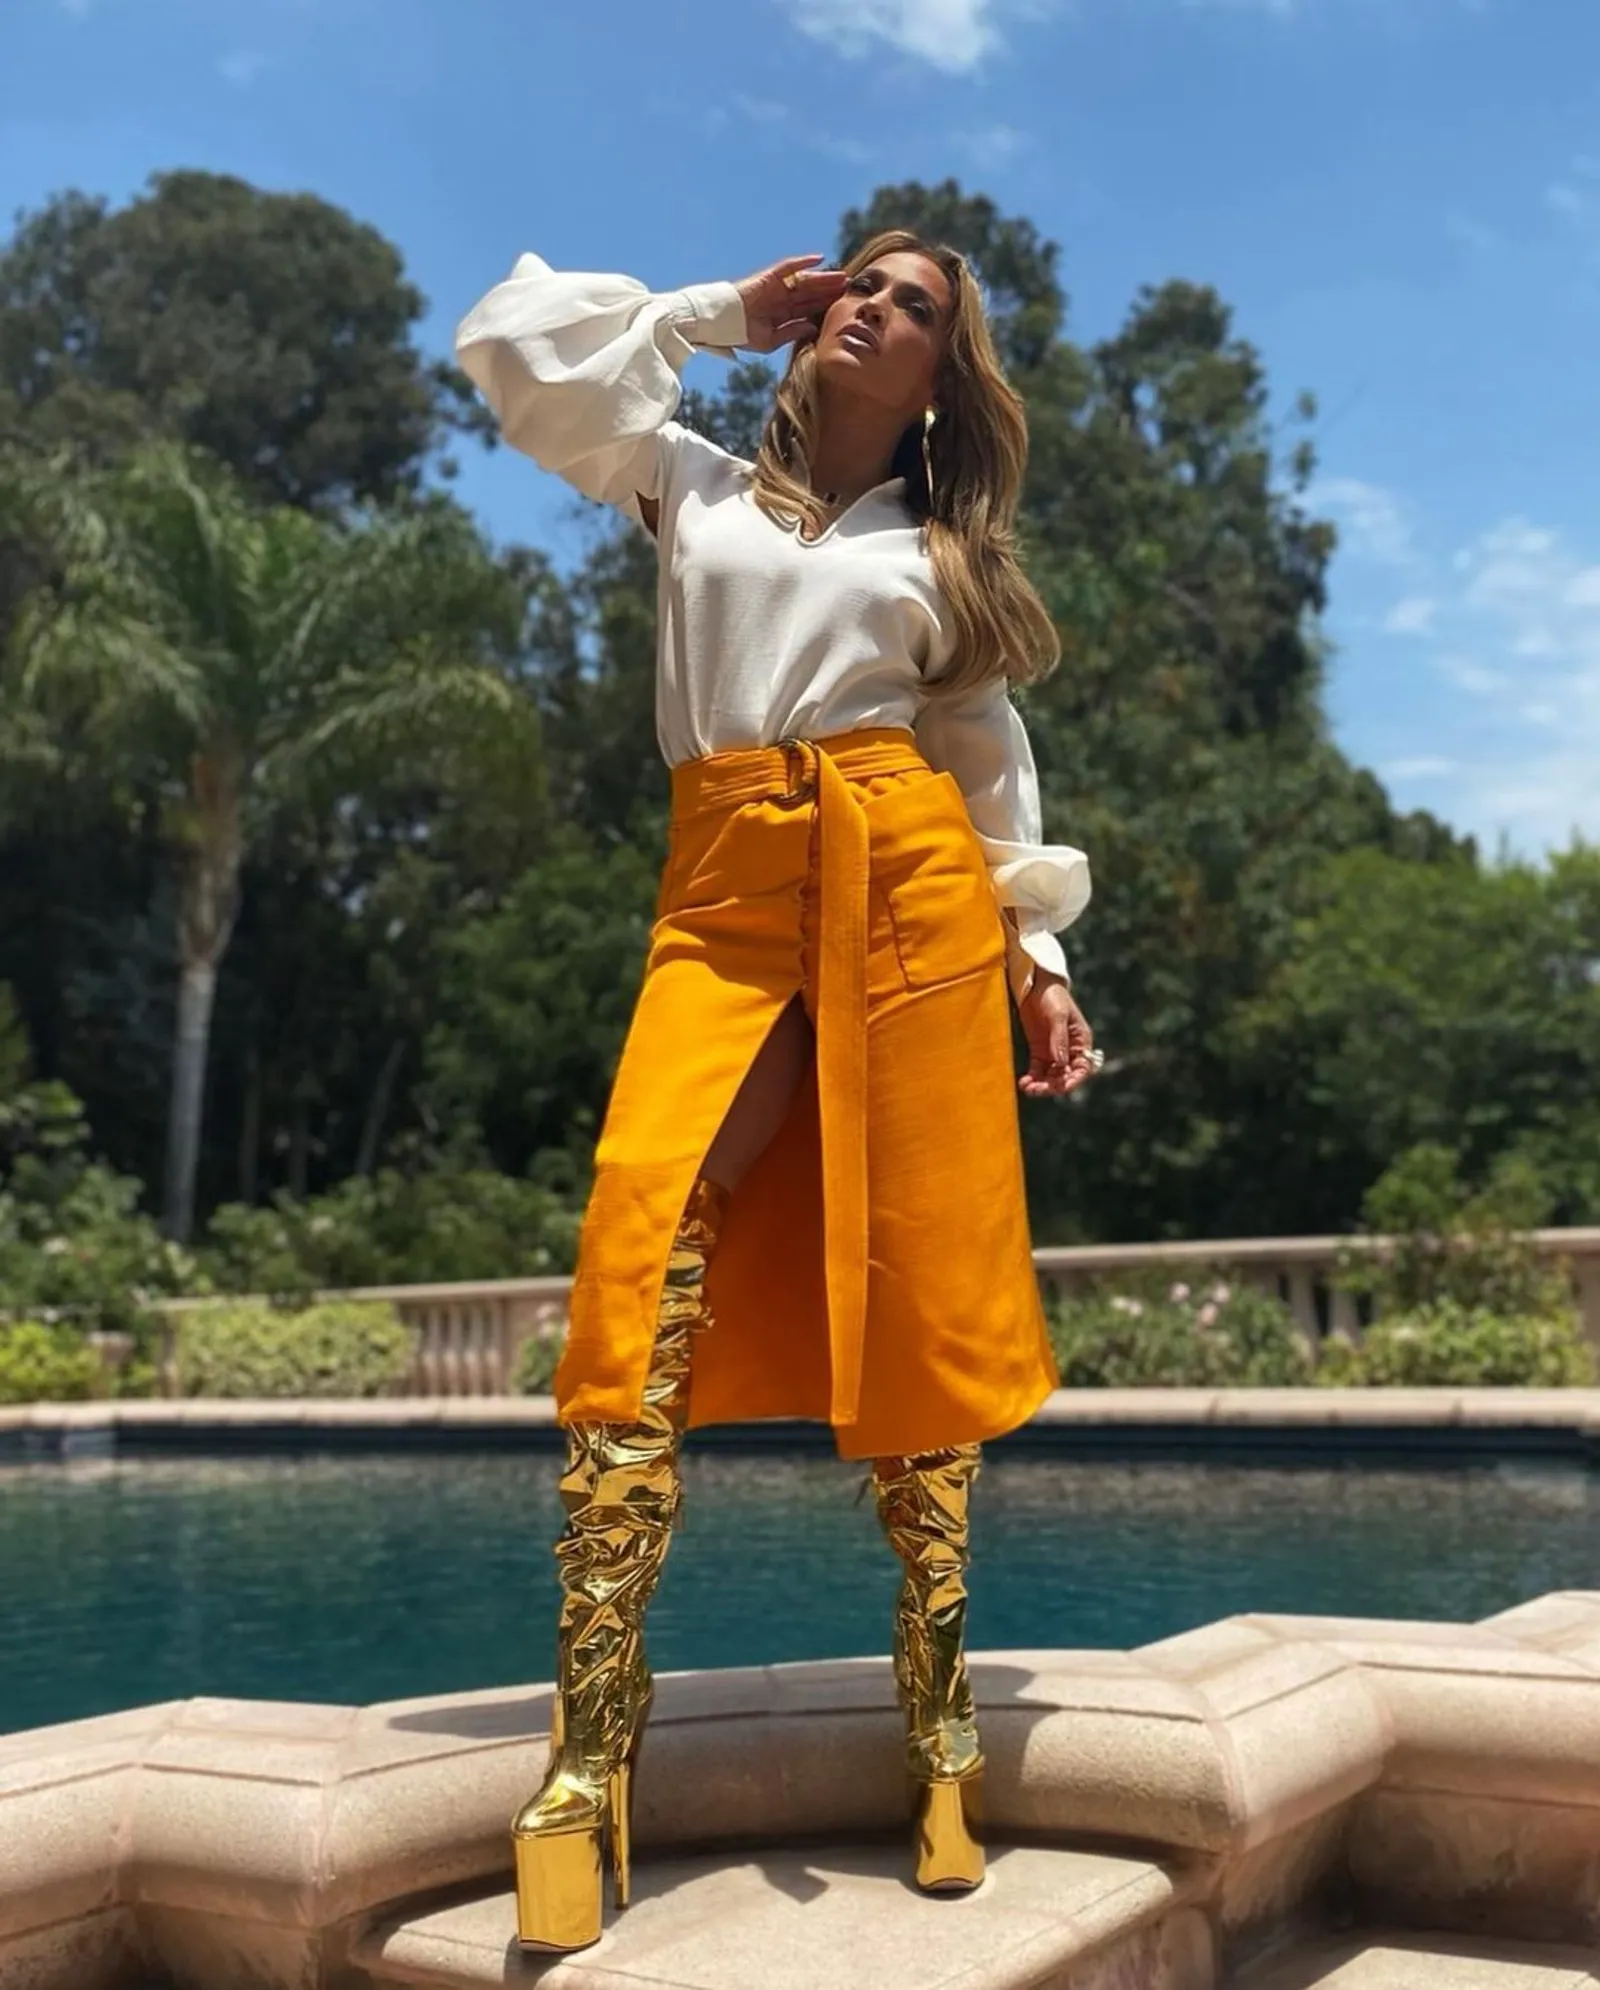 Mewah! Jennifer Lopez Pakai Boots Emas di Pinggir Kolam Renang